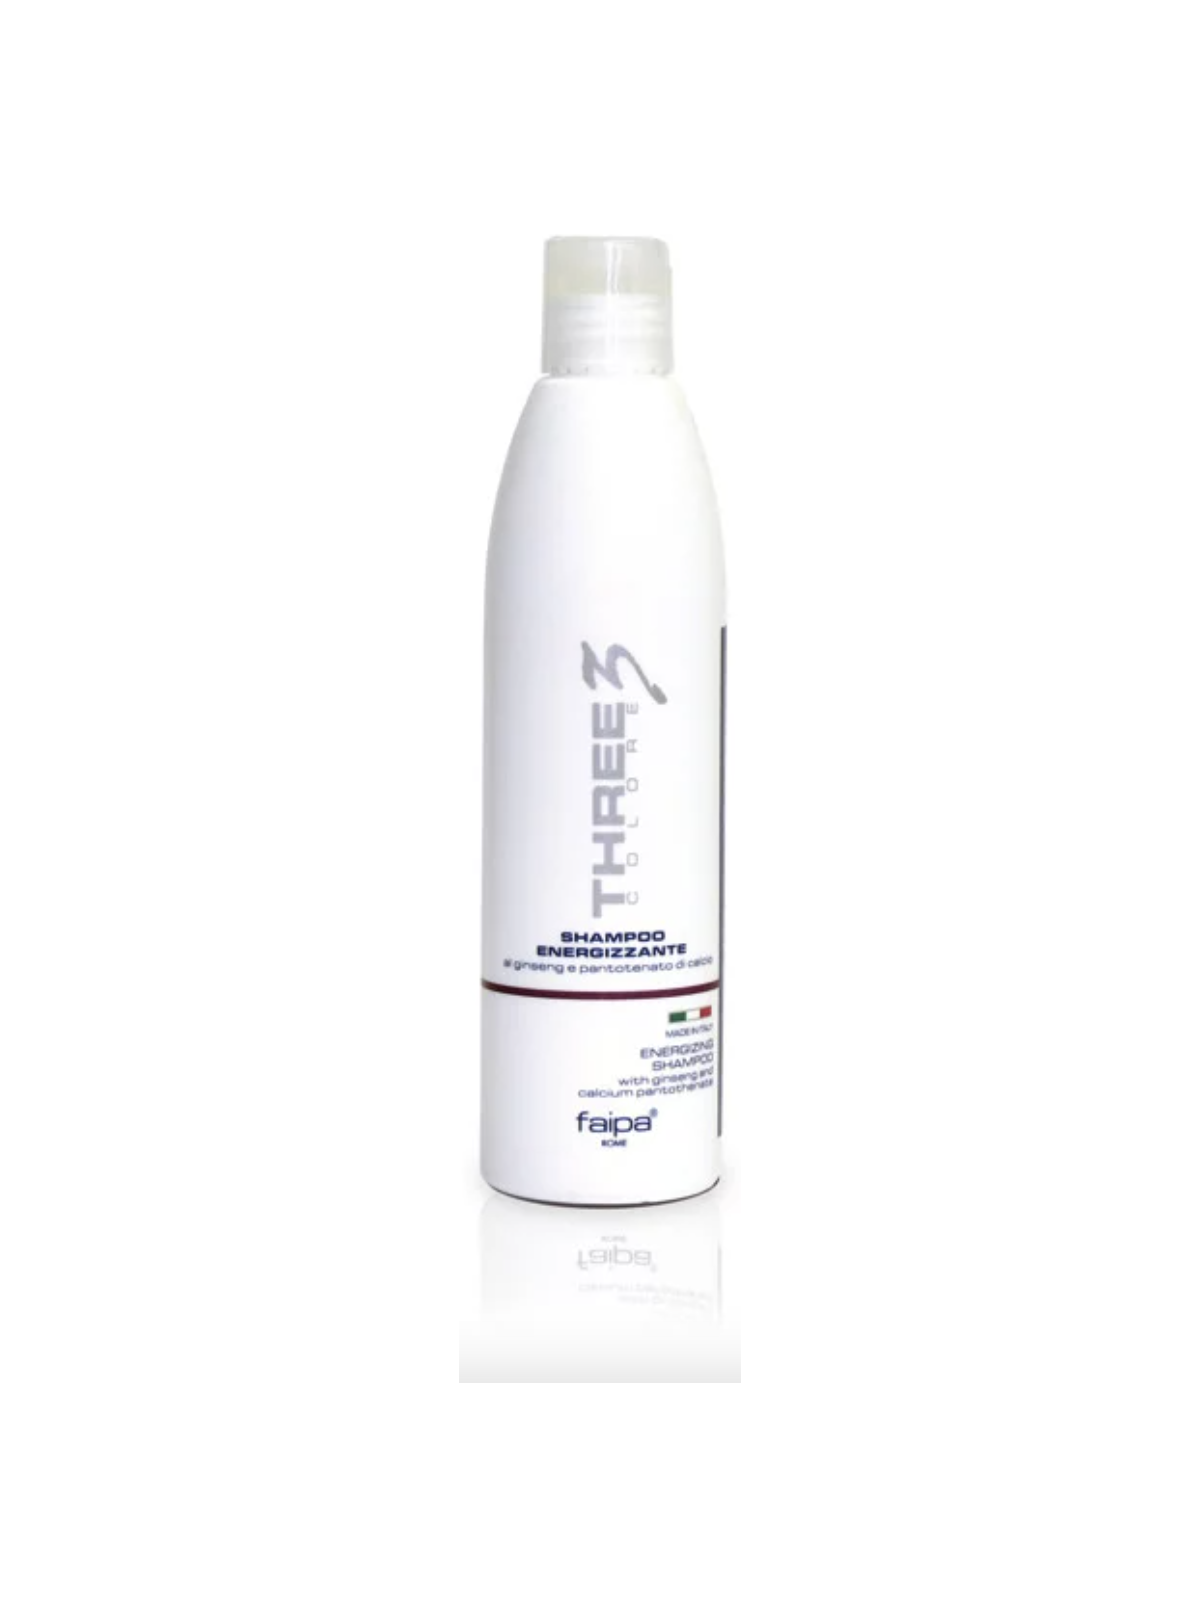 Faipa Three shampoo energizzante 250 ml7,70 €